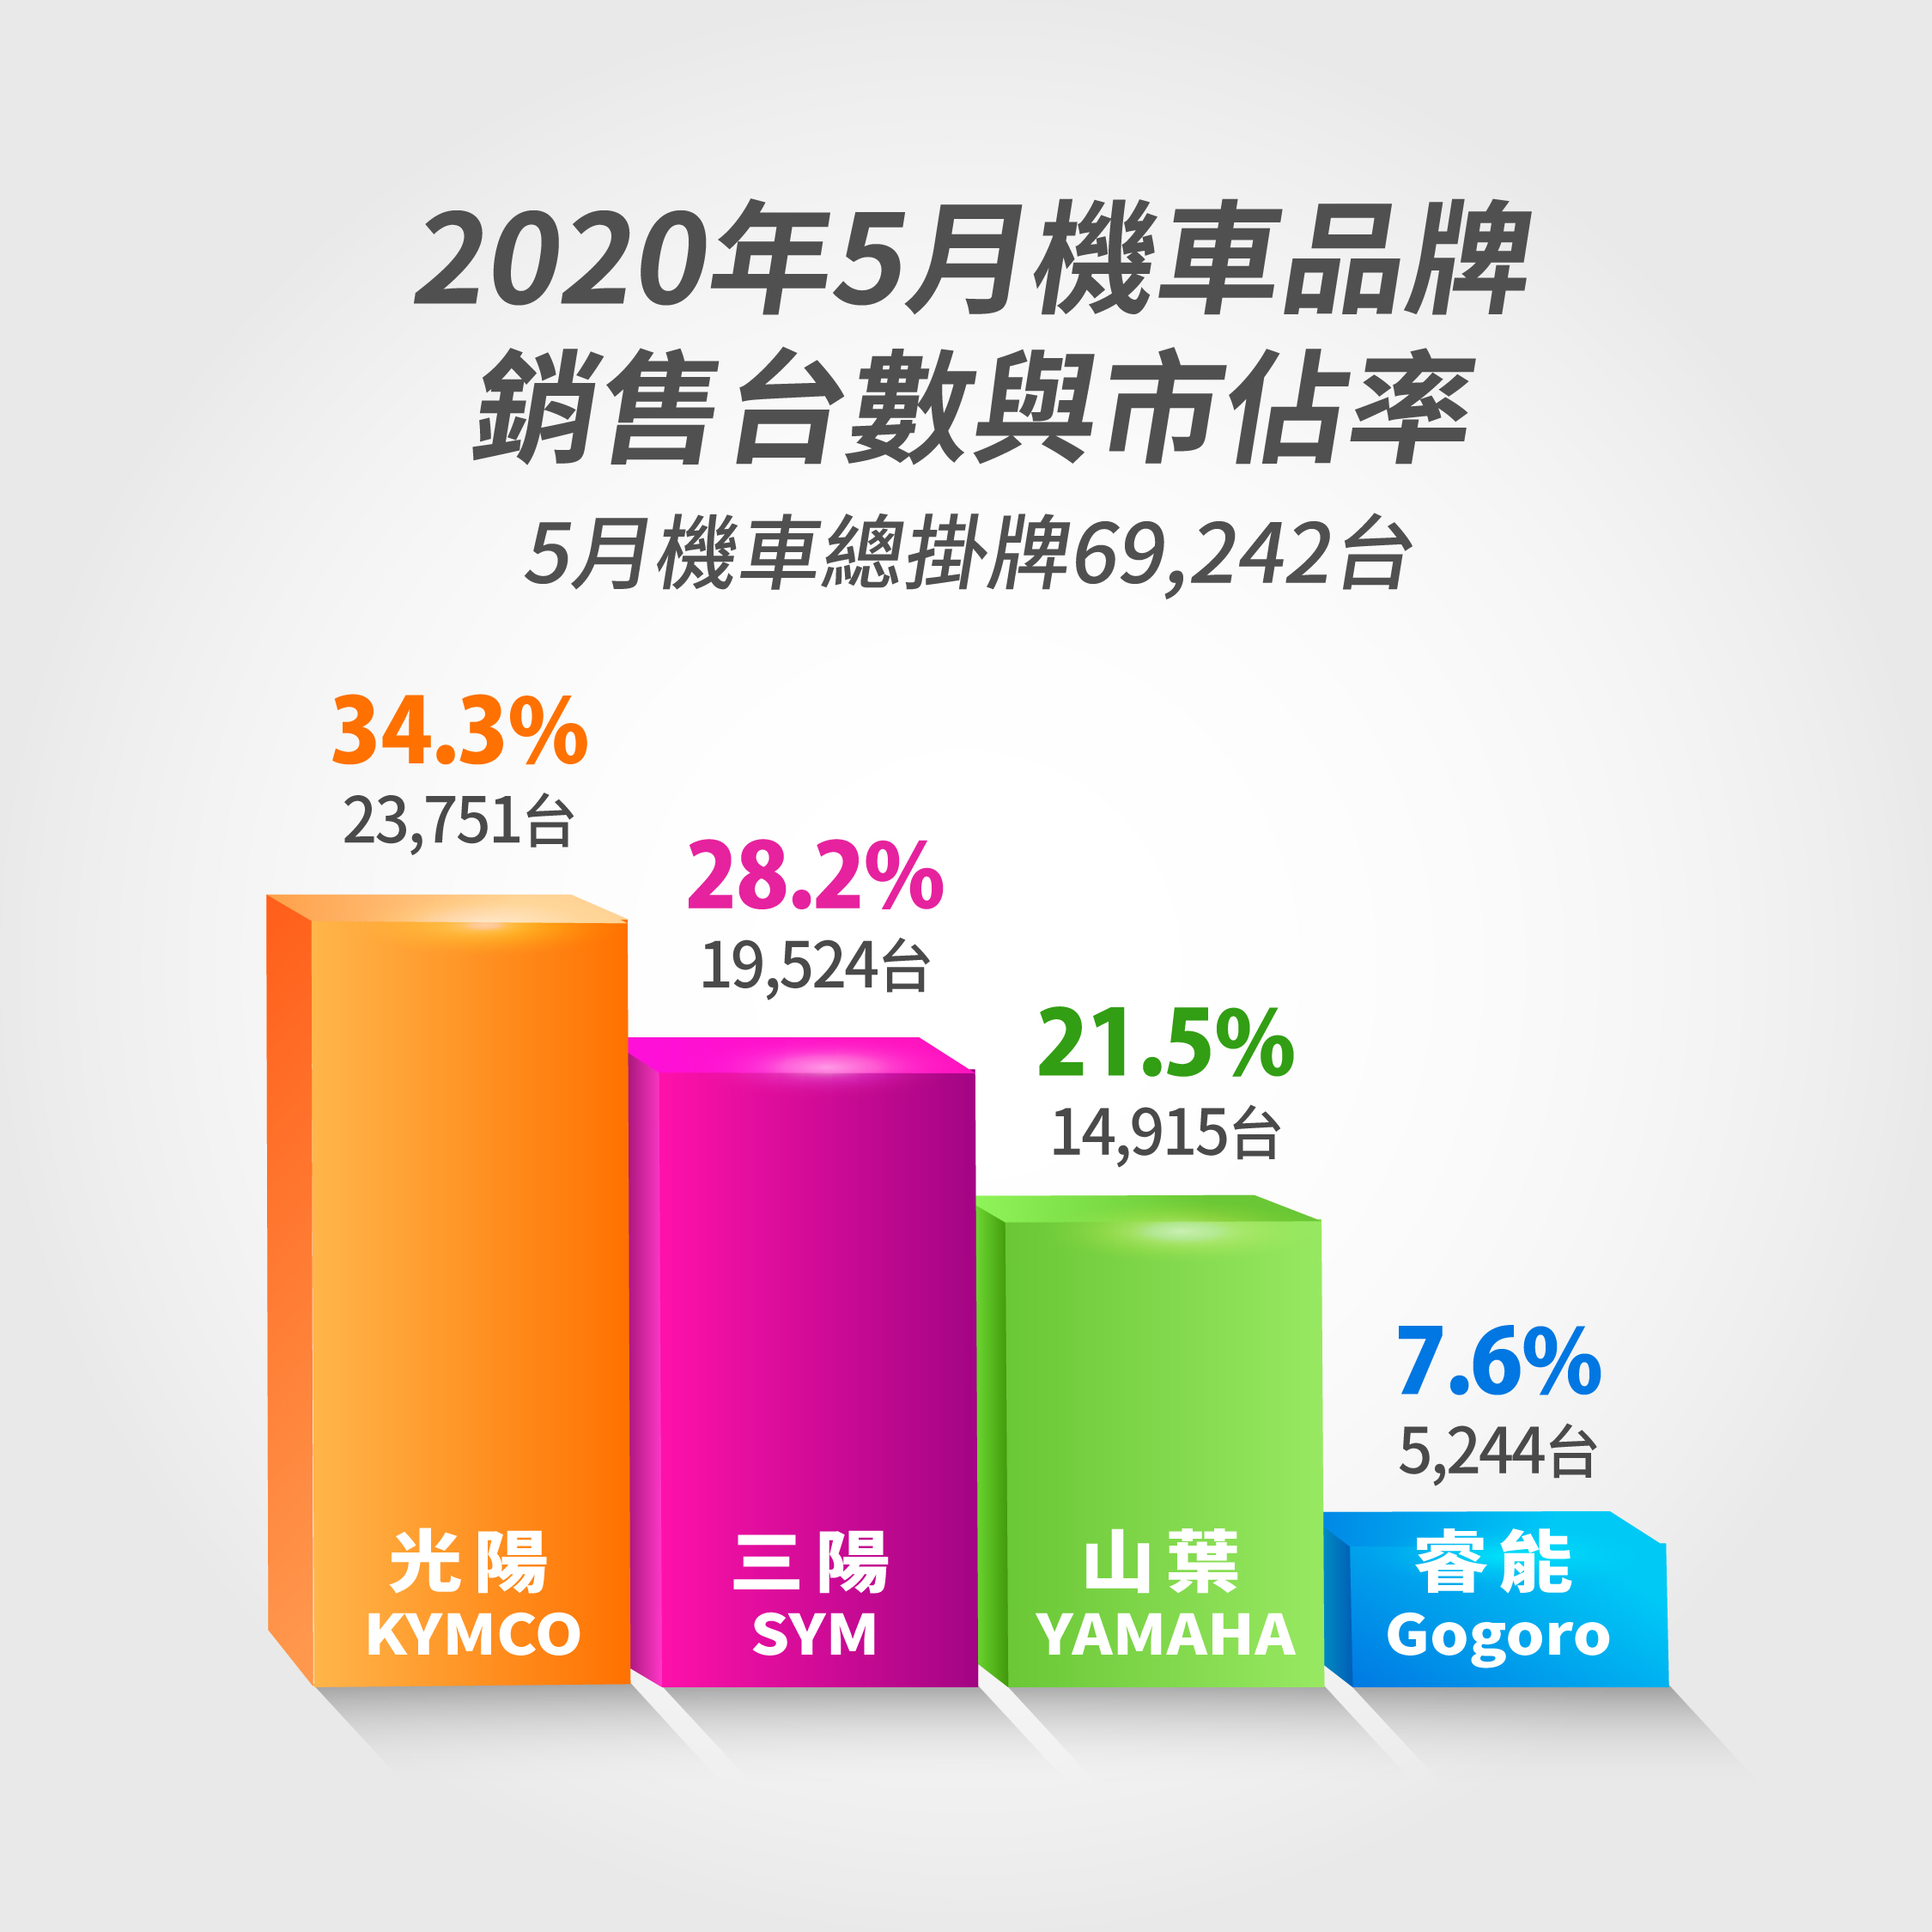 2020 年 5 月機車品牌銷售總掛牌 69,242 台，光陽市佔率 34.3% 居冠。